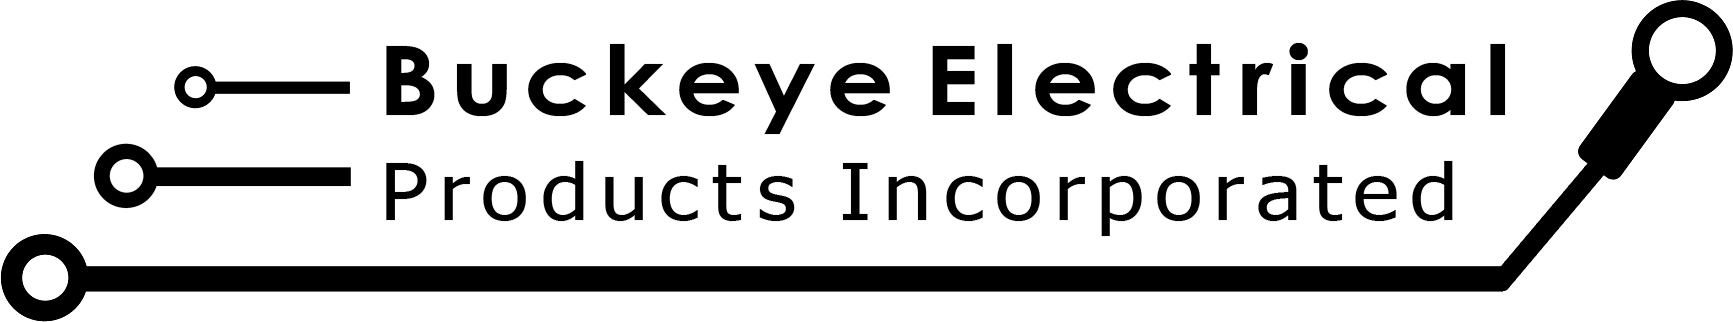 Buckeye Electrical Products Inc.